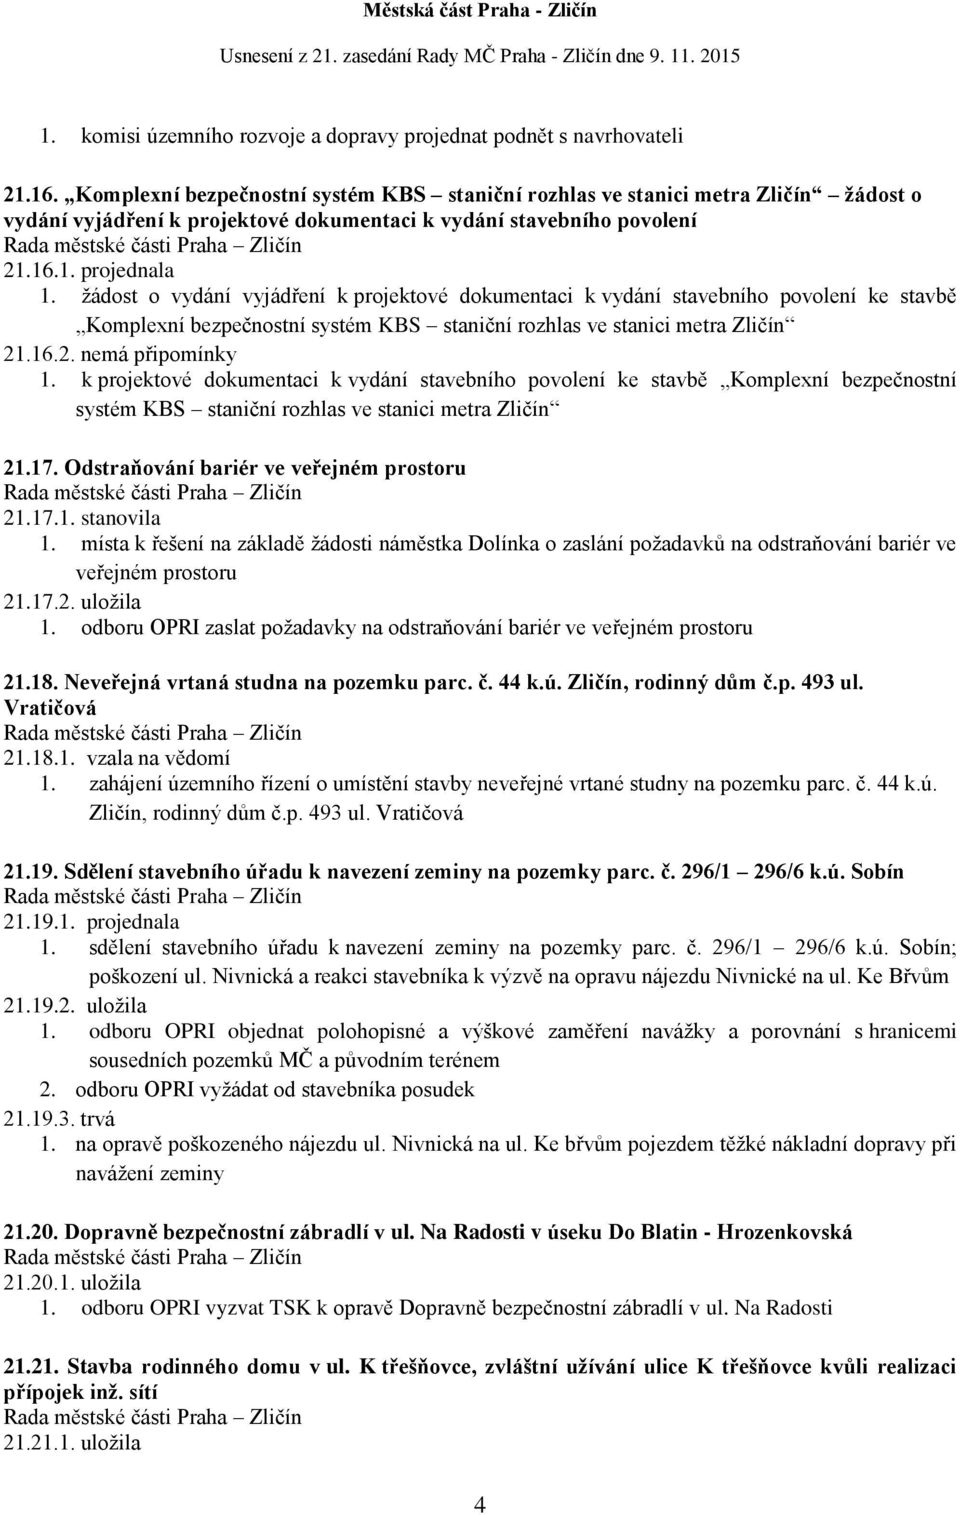 žádost o vydání vyjádření k projektové dokumentaci k vydání stavebního povolení ke stavbě Komplexní bezpečnostní systém KBS staniční rozhlas ve stanici metra Zličín 21.16.2. nemá připomínky 1.